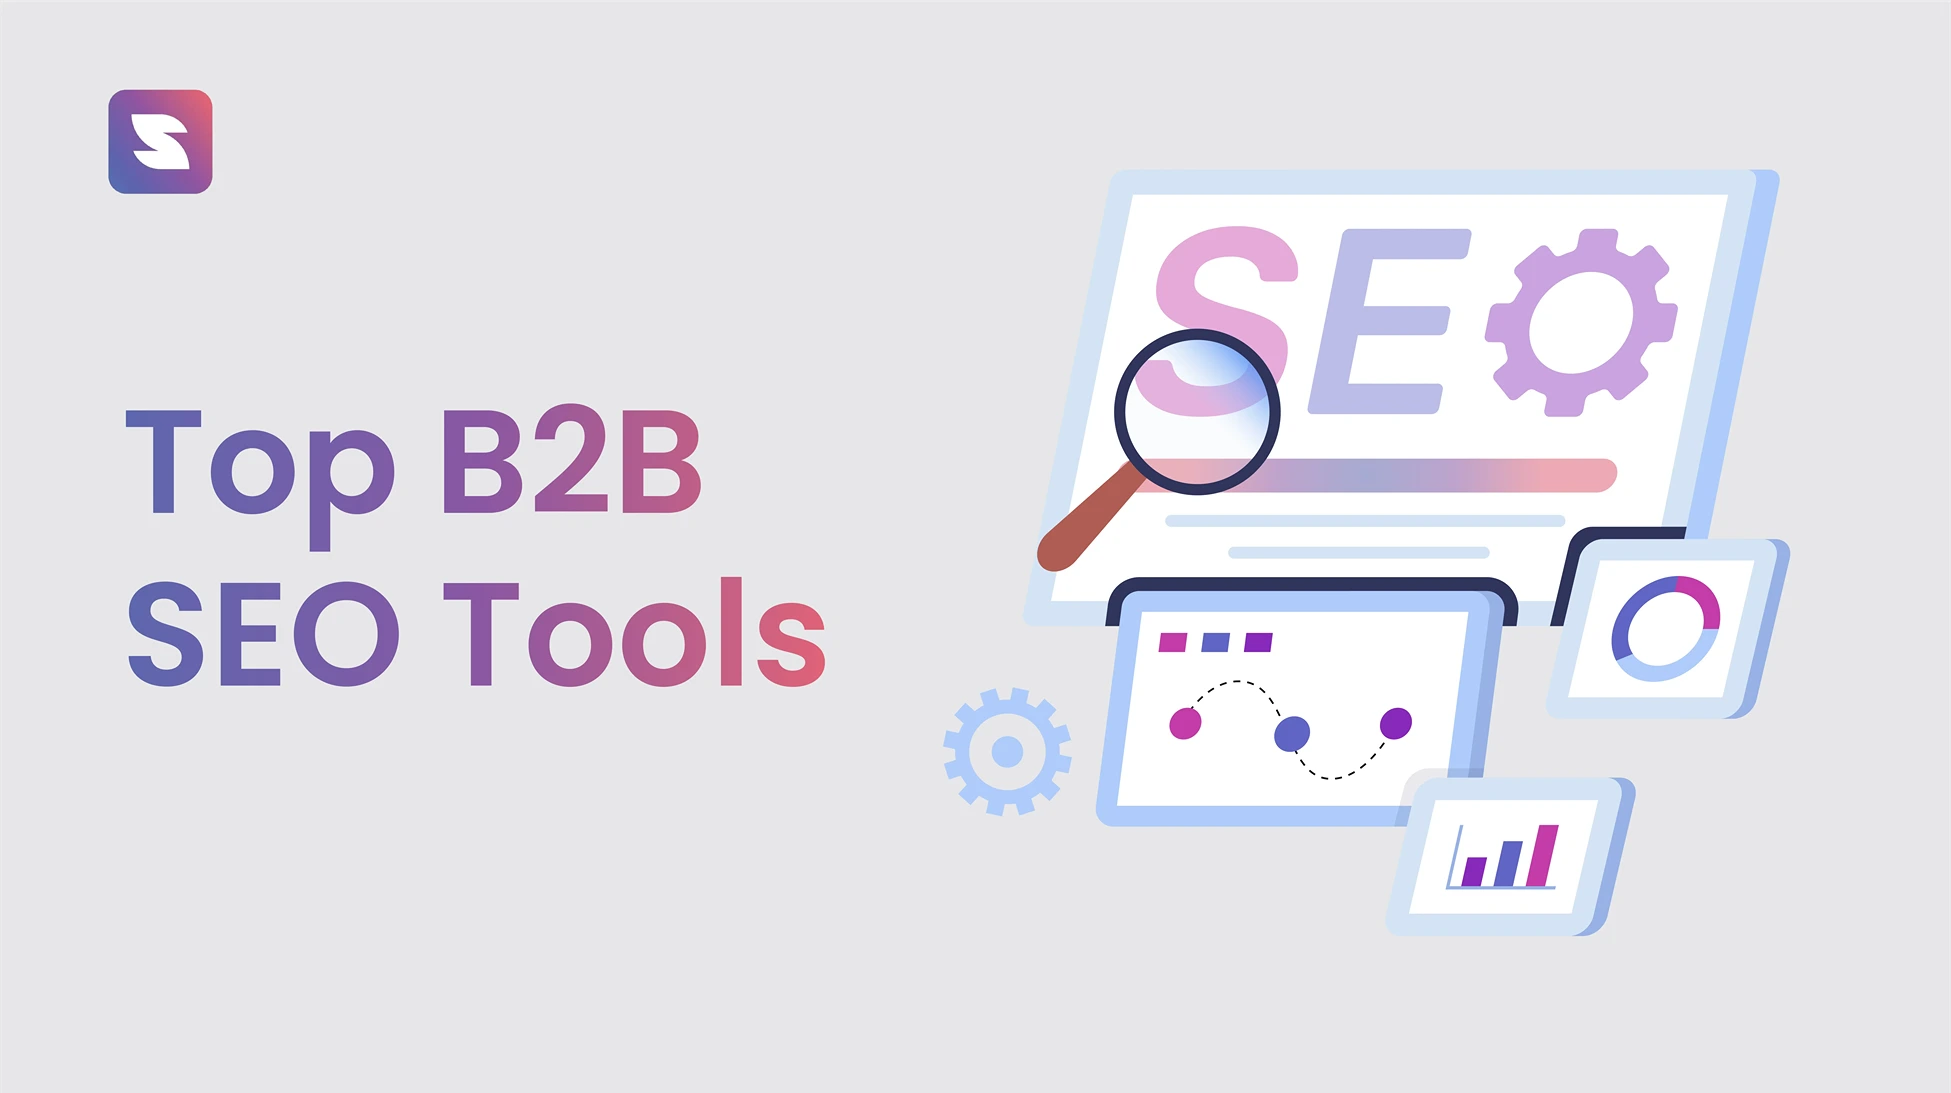 Top B2B SEO Tools